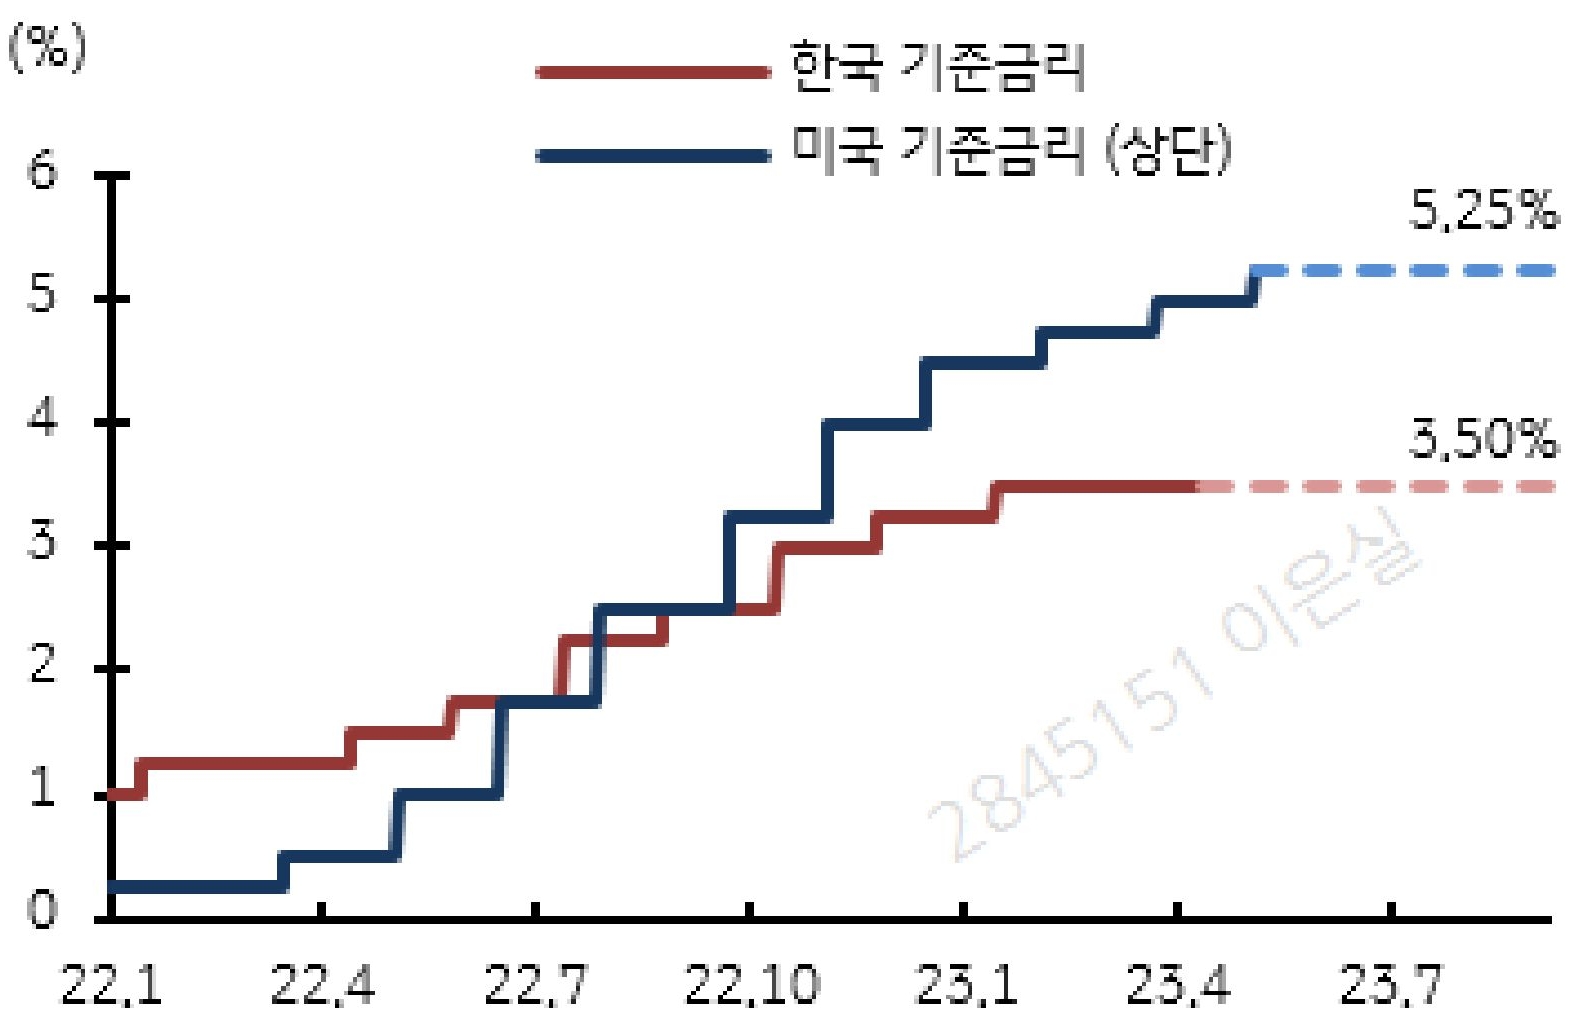 한국과 미국의 기준금리 추이 및 전망을 나타낸 그래프이다. 빨간색 선이 한국 기준금리이고, 파란색 선은 미국 기준금리이다.